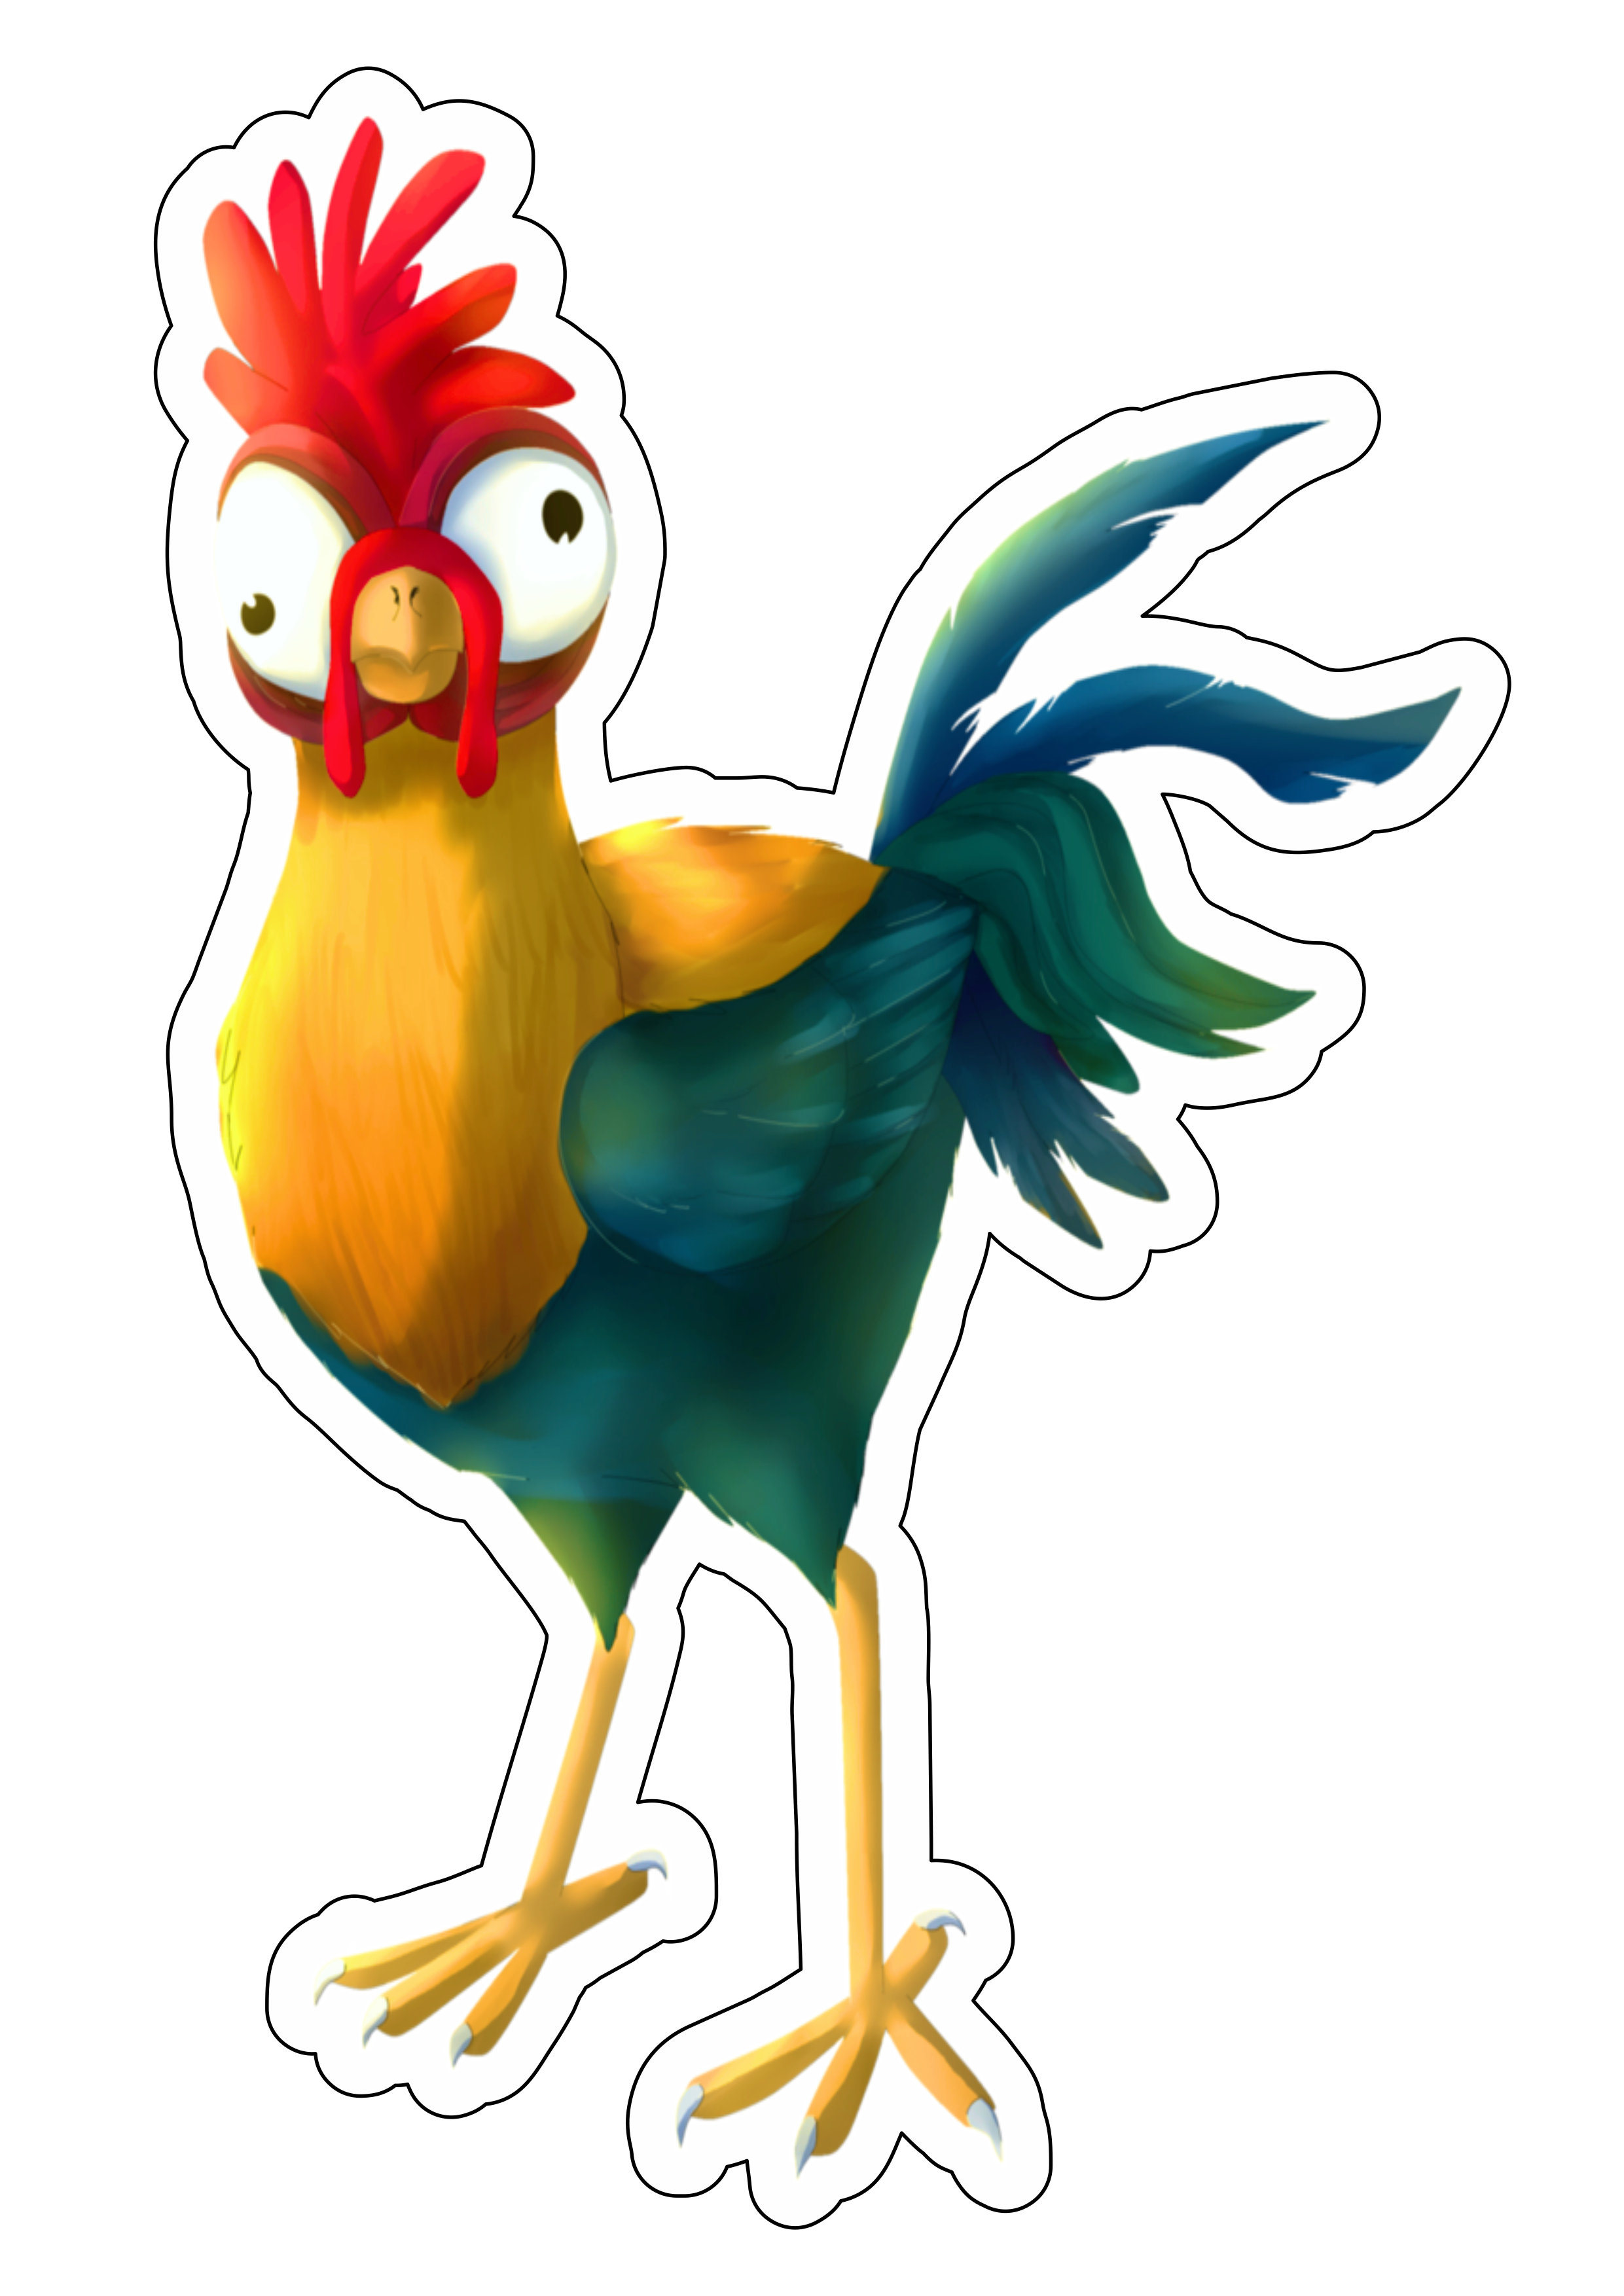 Moana galinho maluco filme infantil animação disney personagem fictício tropical imagem sem fundo png